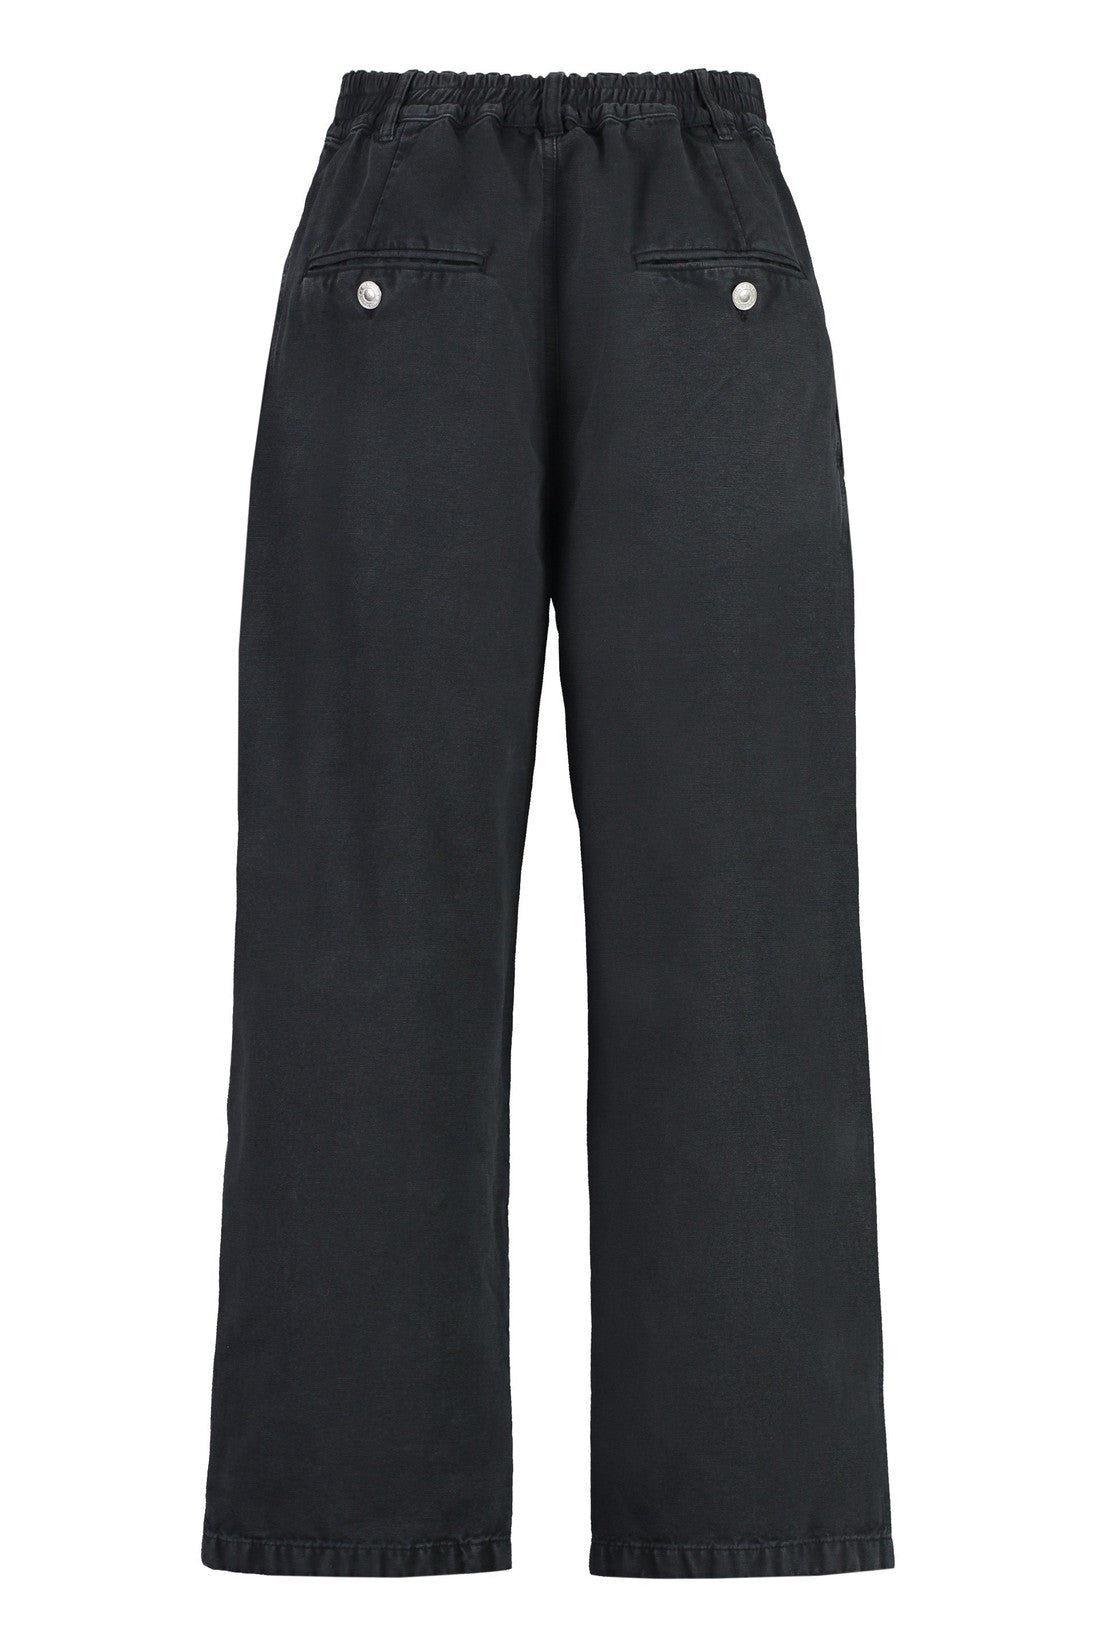 Marant-OUTLET-SALE-Fostin cotton trousers-ARCHIVIST